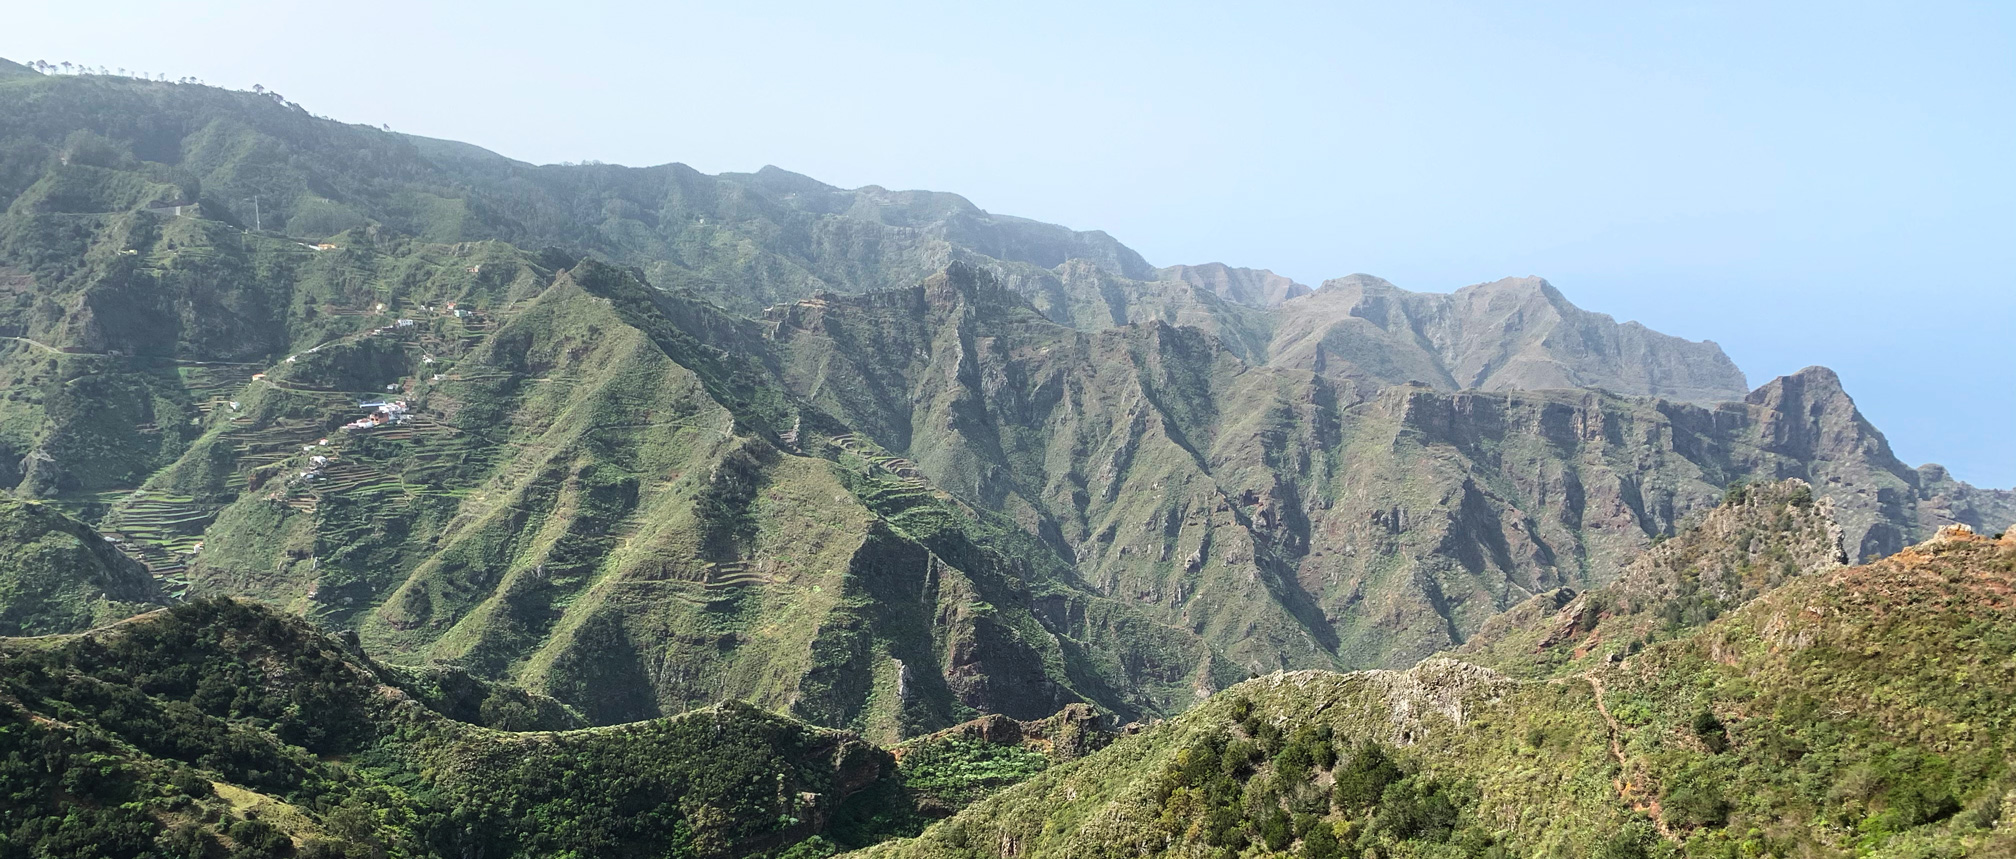 Islas Canarias, Tenerife: Parque Rural de Anaga. Sendero de los sentidos. Ruta circular Las Carboneras - Chinamada